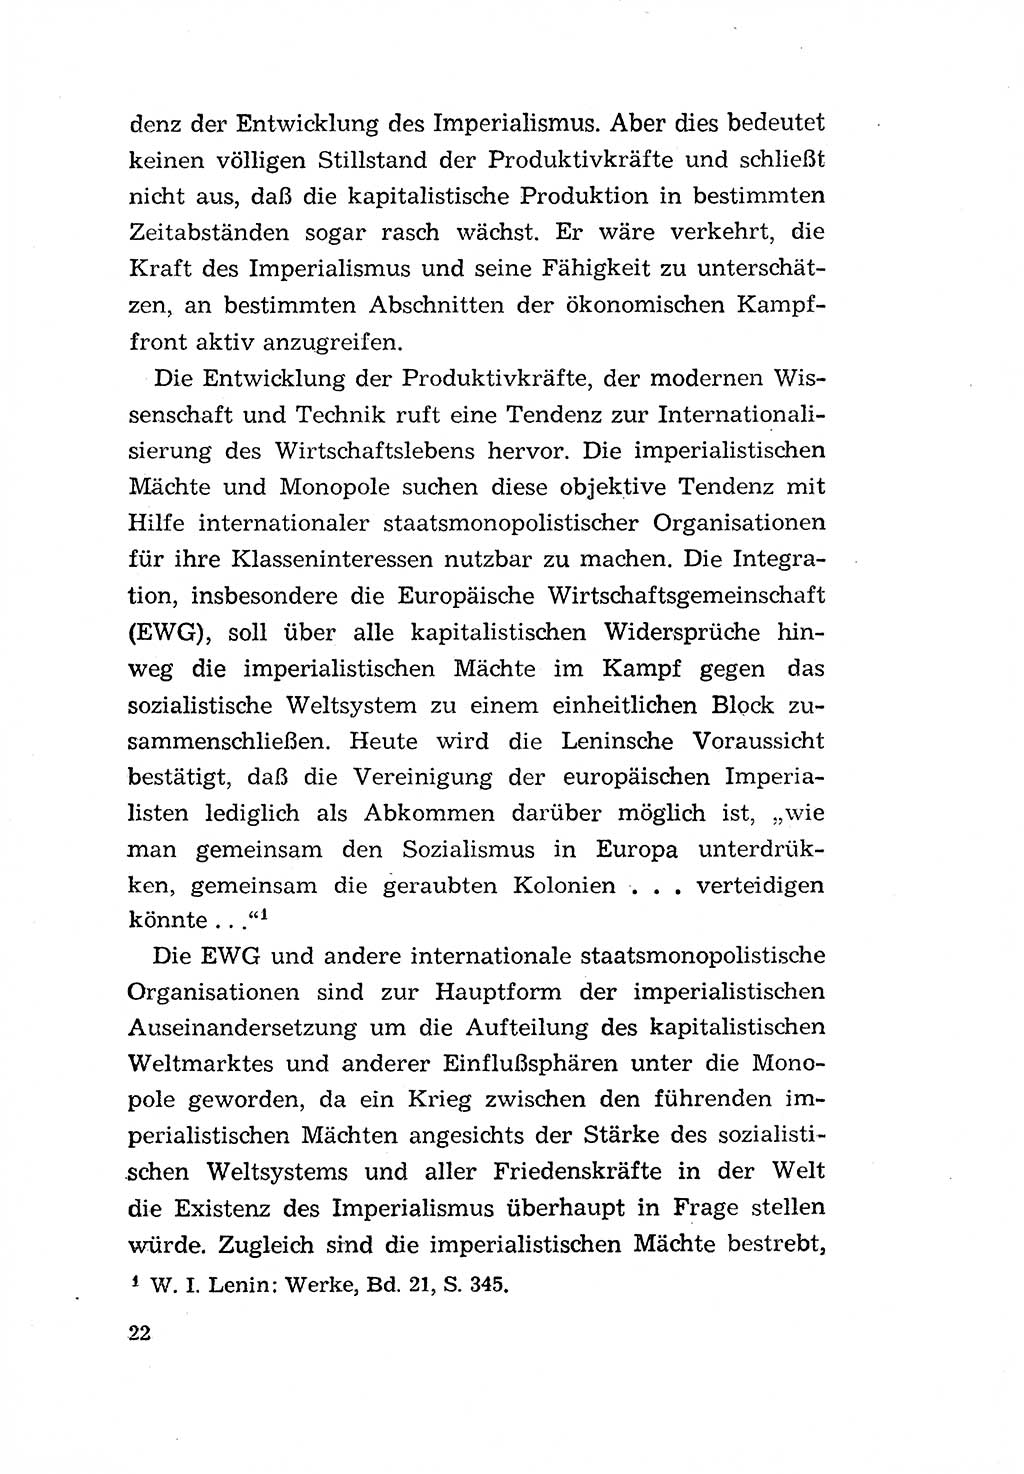 Programm der Sozialistischen Einheitspartei Deutschlands (SED) [Deutsche Demokratische Republik (DDR)] 1963, Seite 22 (Progr. SED DDR 1963, S. 22)